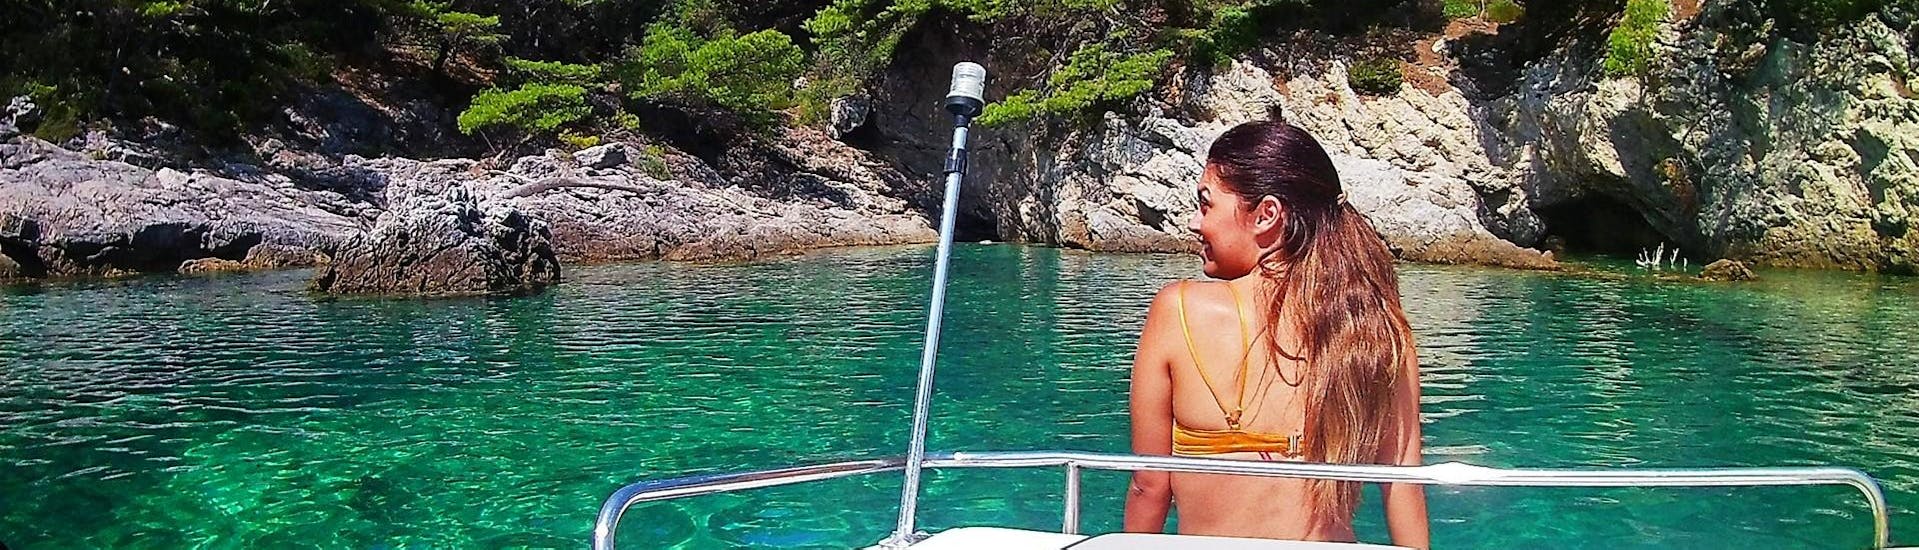 Vrouw op de boeg van de boot tijdens een tour georganiseerd door Snooky Tours Dubrovnik.